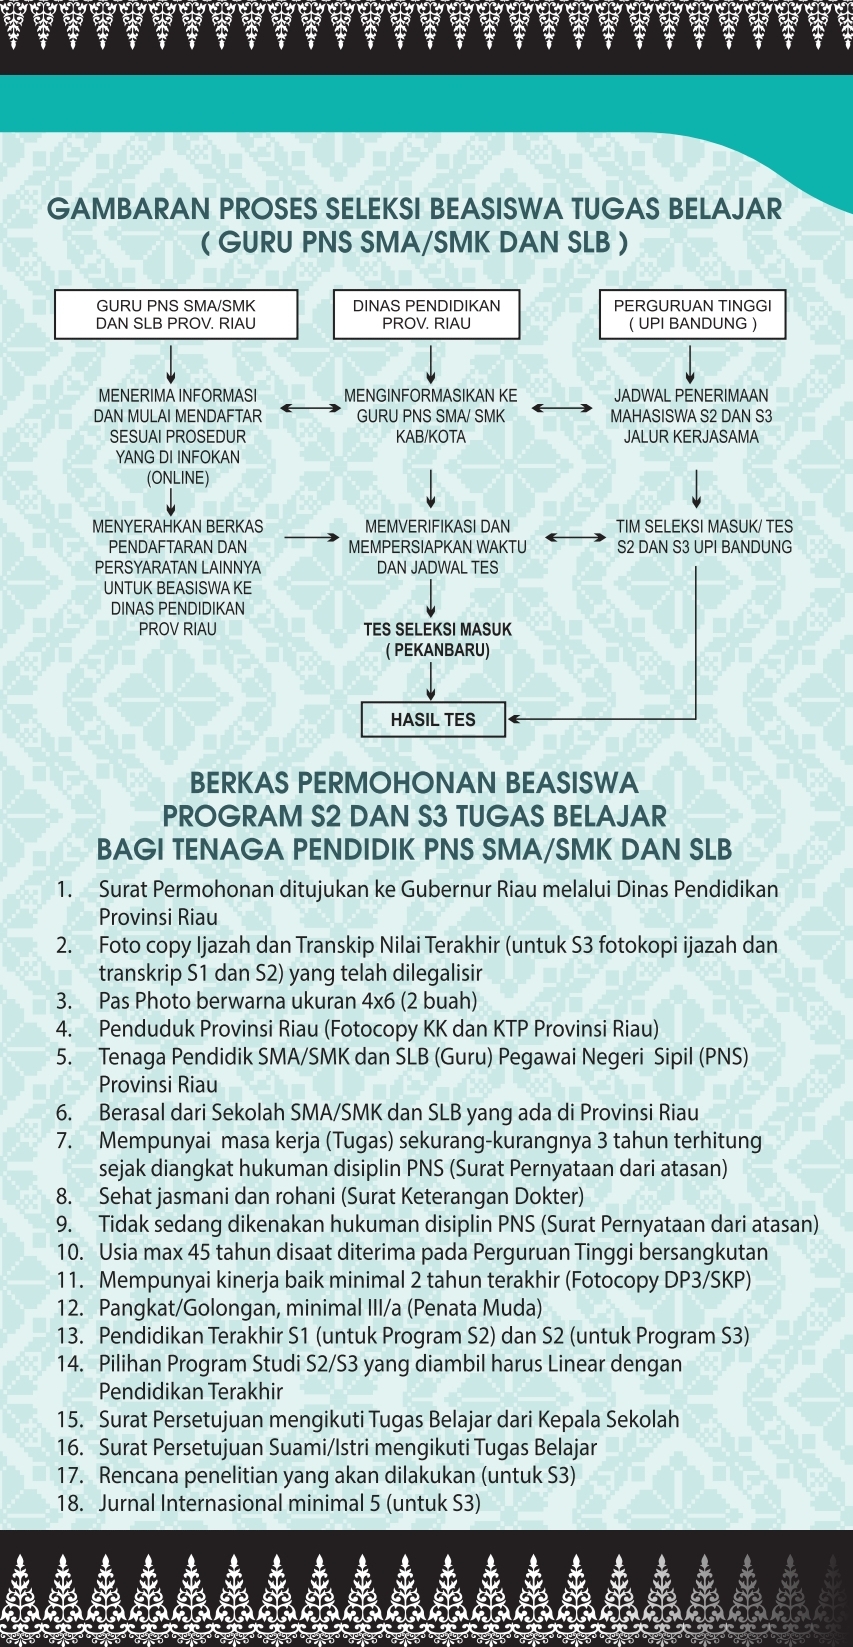 Program Beasiswa S2 Dan S3 Tugas Belajar Bagi Tenaga Pendidik ( Guru Pns Sma/ Smk Dan Slb) Di Upi Bandung Oleh Pemprov Riau - Portal Kompetisi Dan Beasiswa